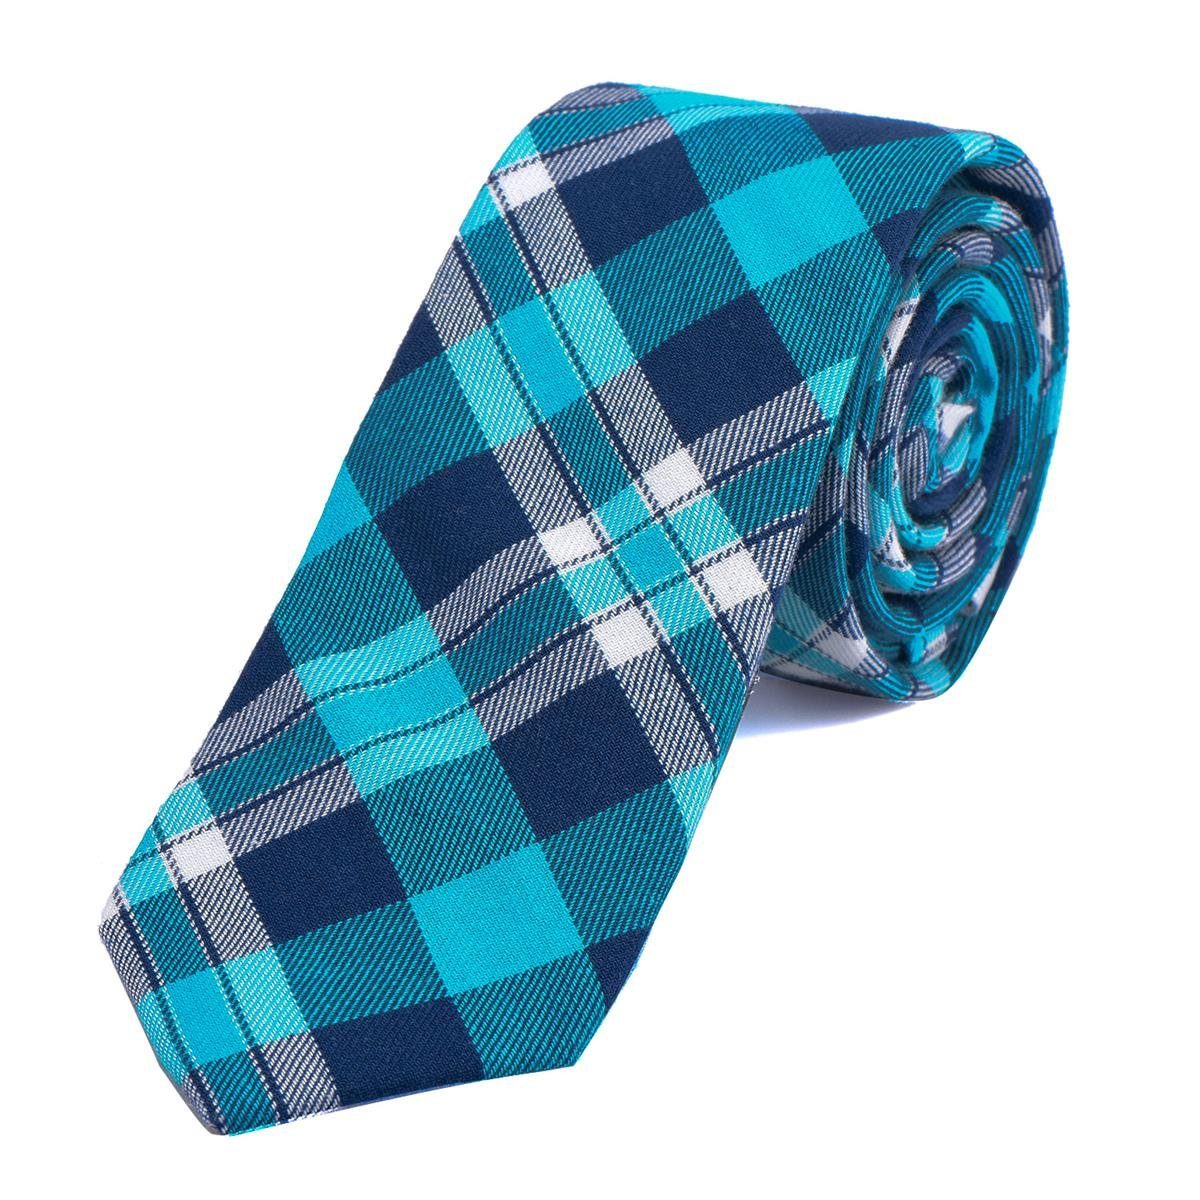 DonDon Krawatte Herren Krawatte 6 cm mit Karos oder Streifen (Packung, 1-St., 1x Krawatte) Baumwolle, kariert oder gestreift, für Büro oder festliche Veranstaltungen blau kariert 2